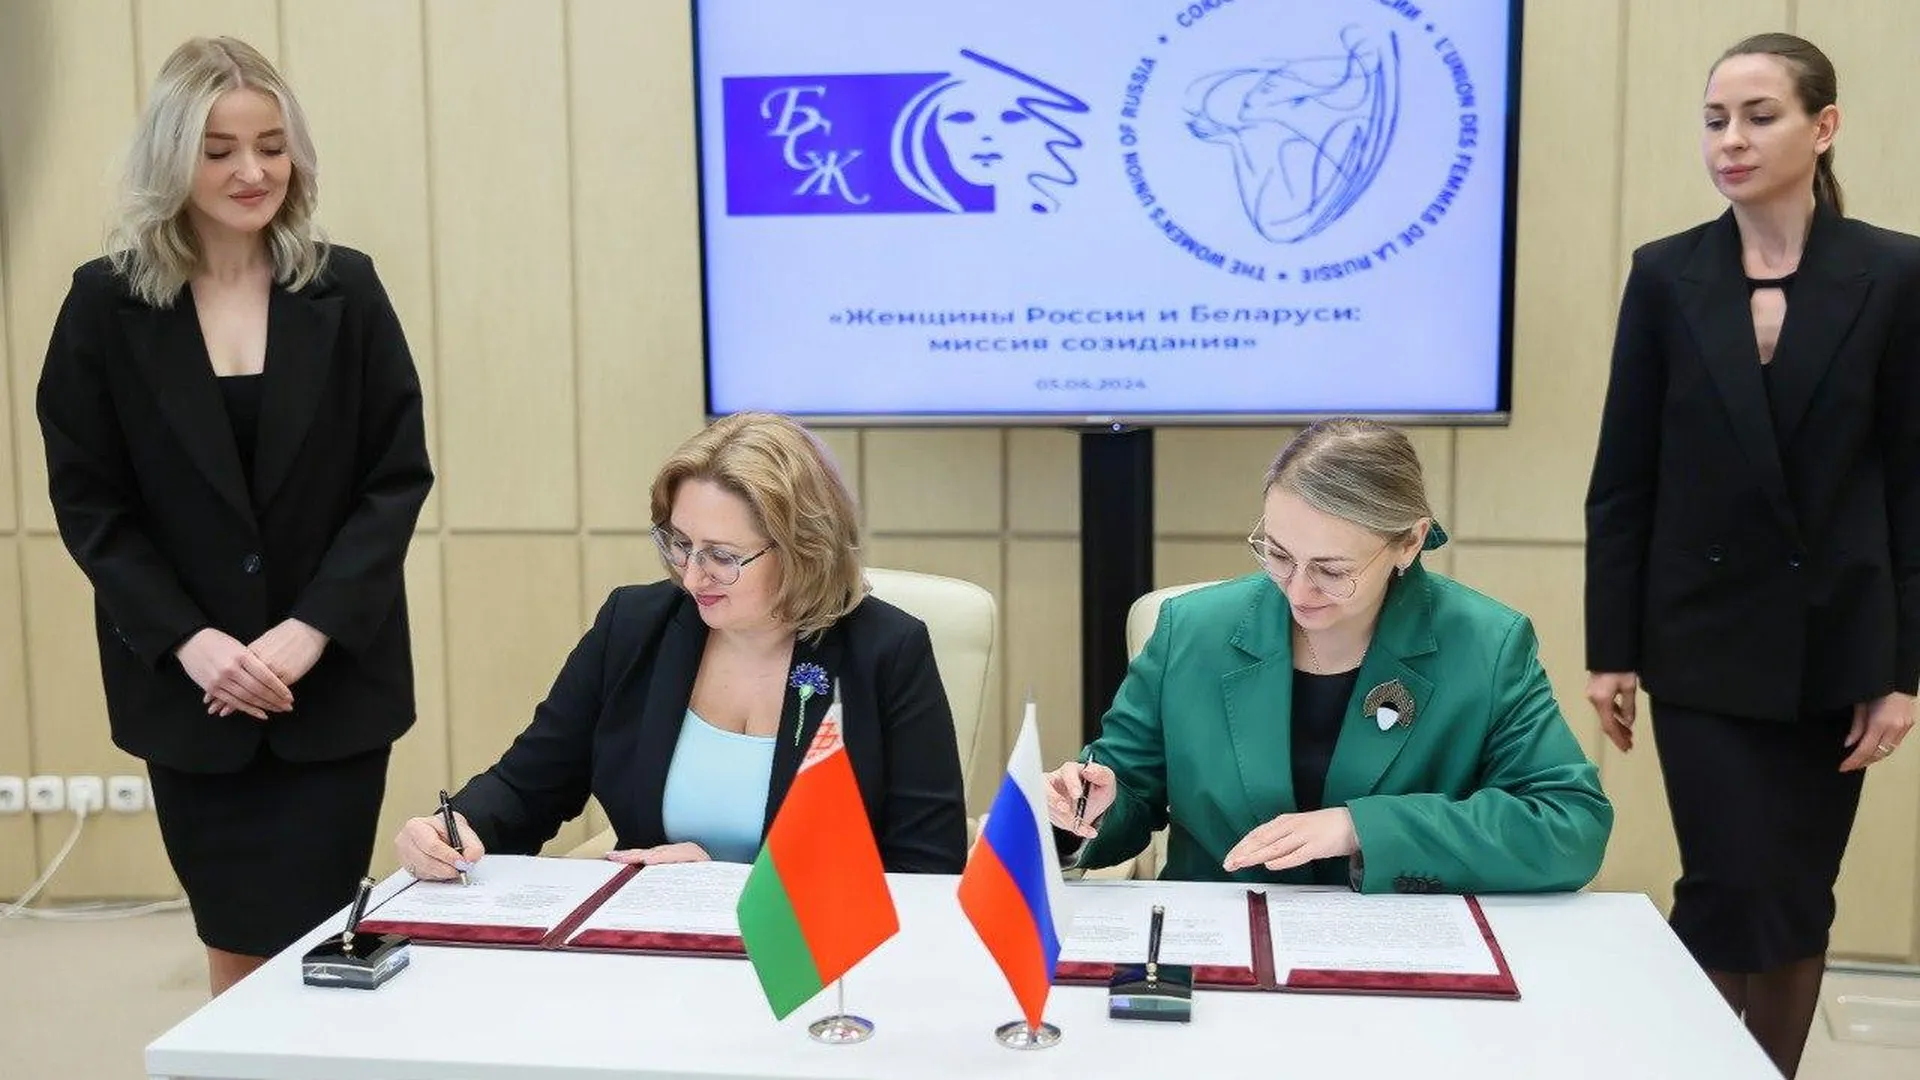 В Красногорске подписали соглашение между союзами женщин РФ и Белоруссии